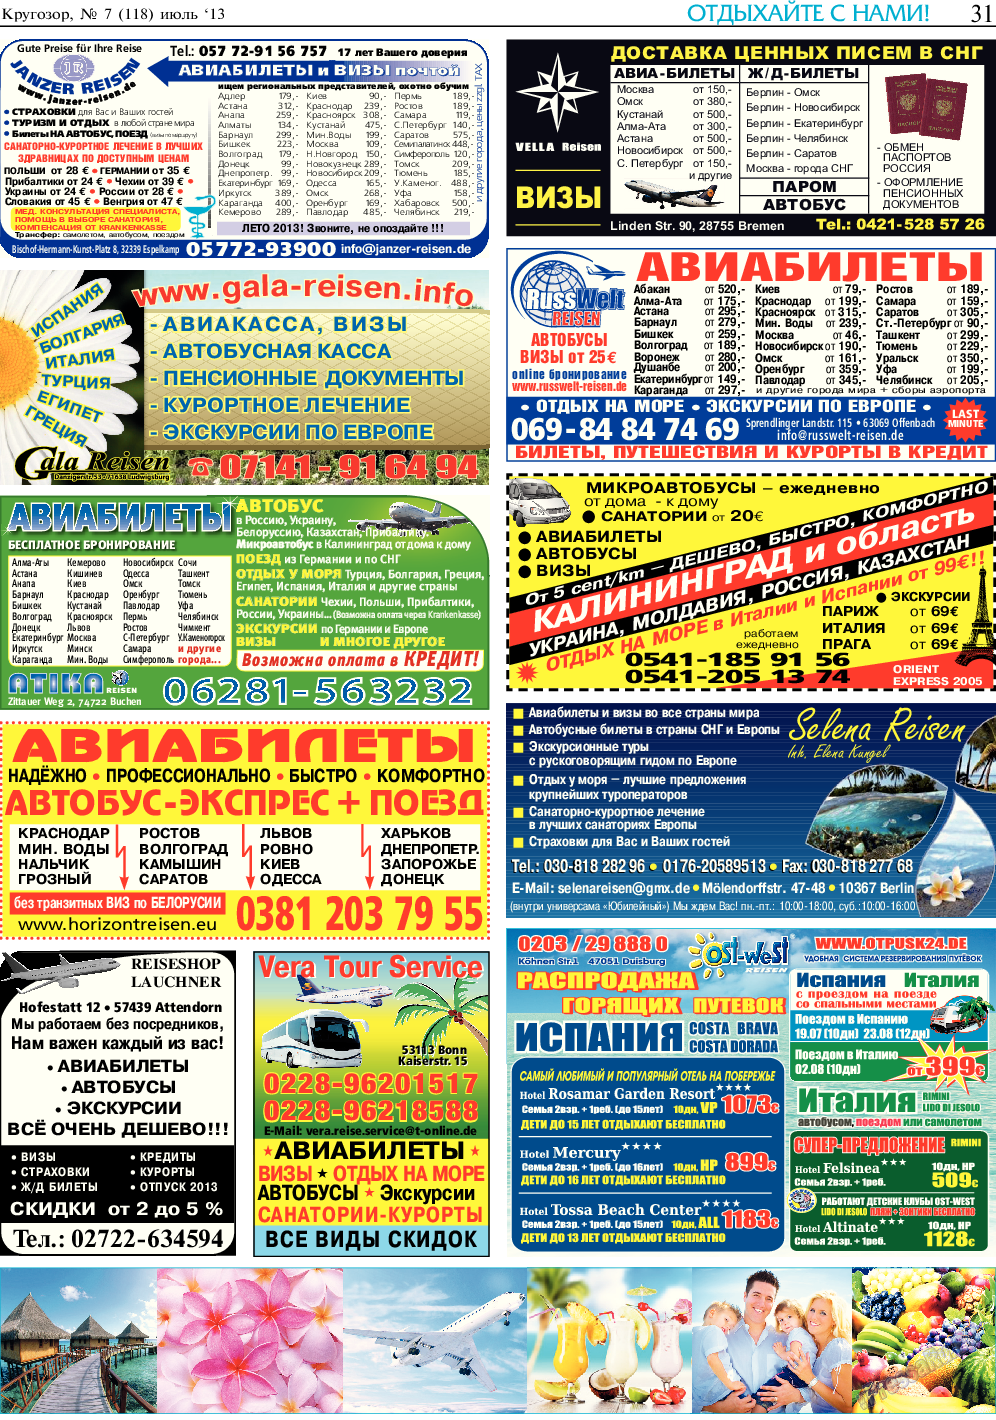 Кругозор, газета. 2013 №7 стр.31